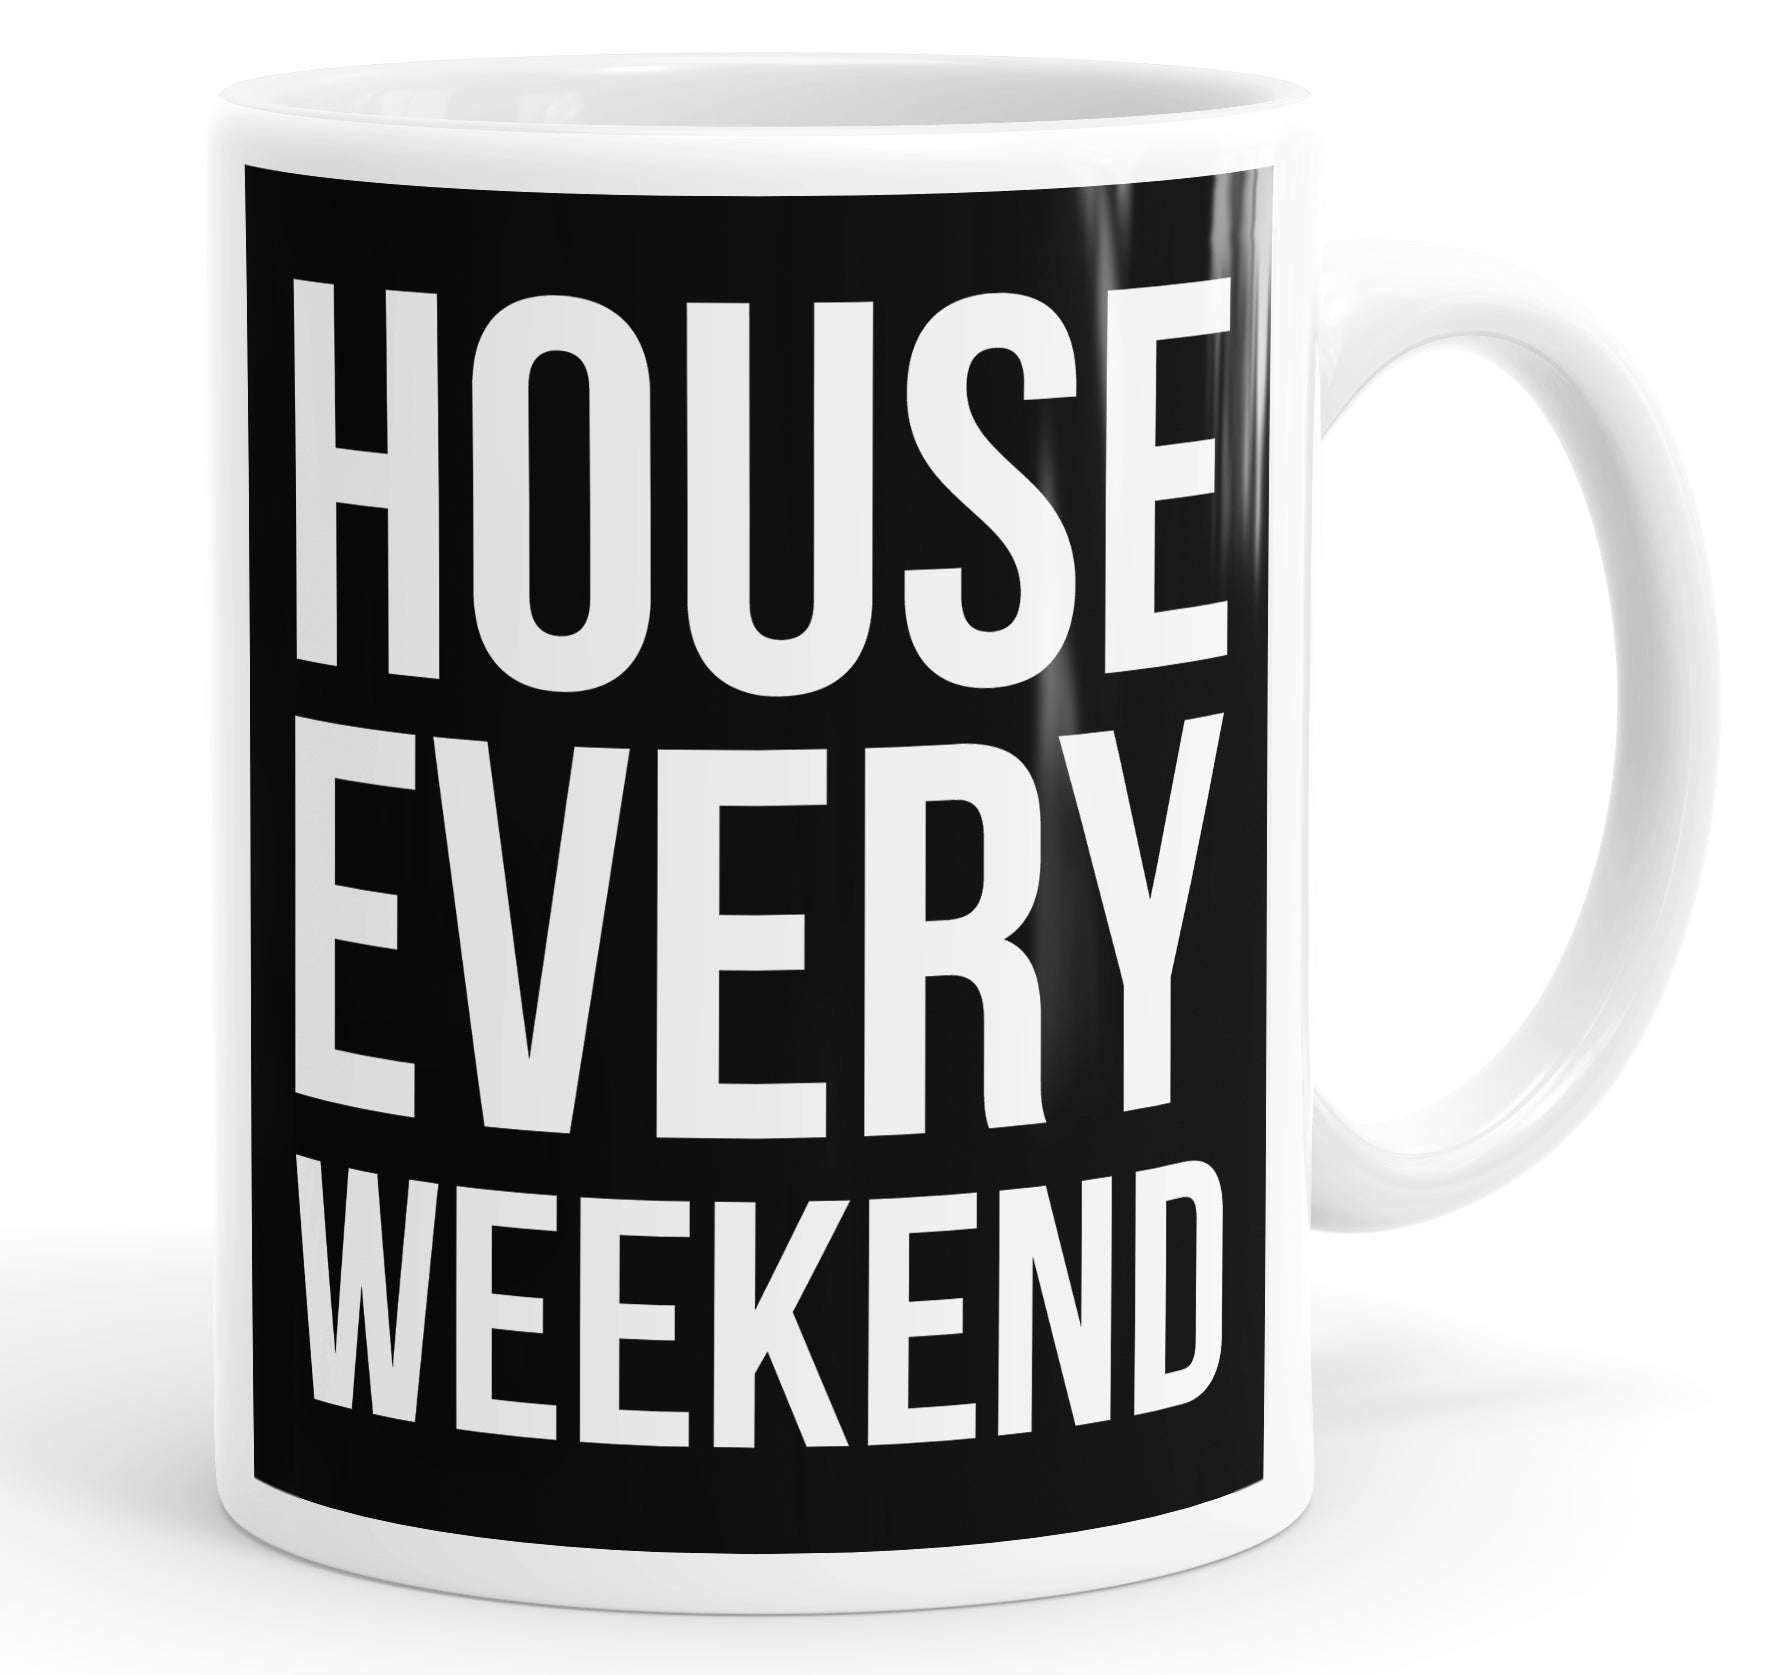 House Every Weekend Mug Cup